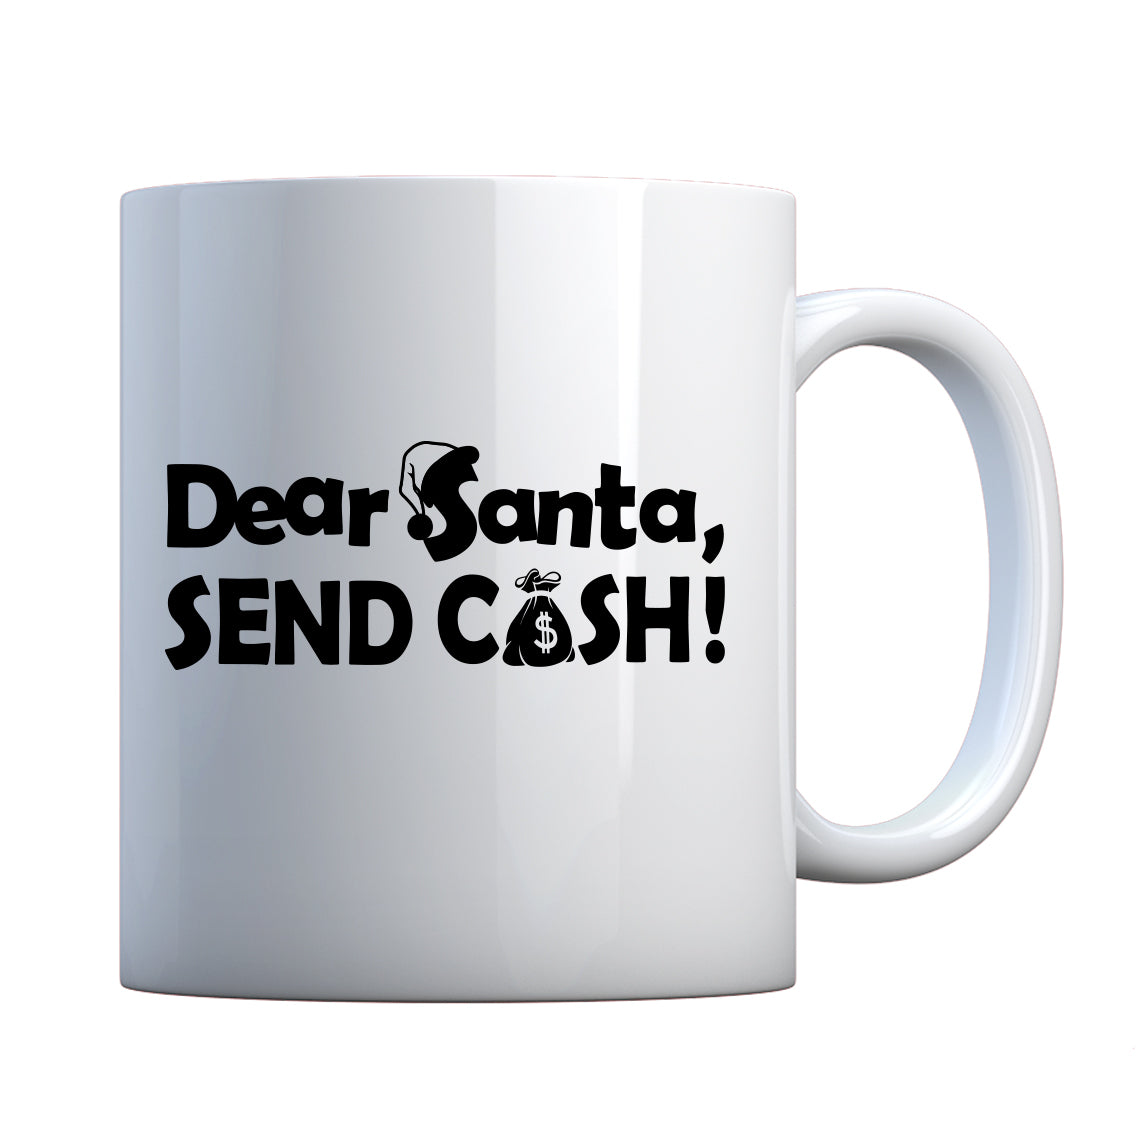 Dear Santa, send cash. Ceramic Gift Mug